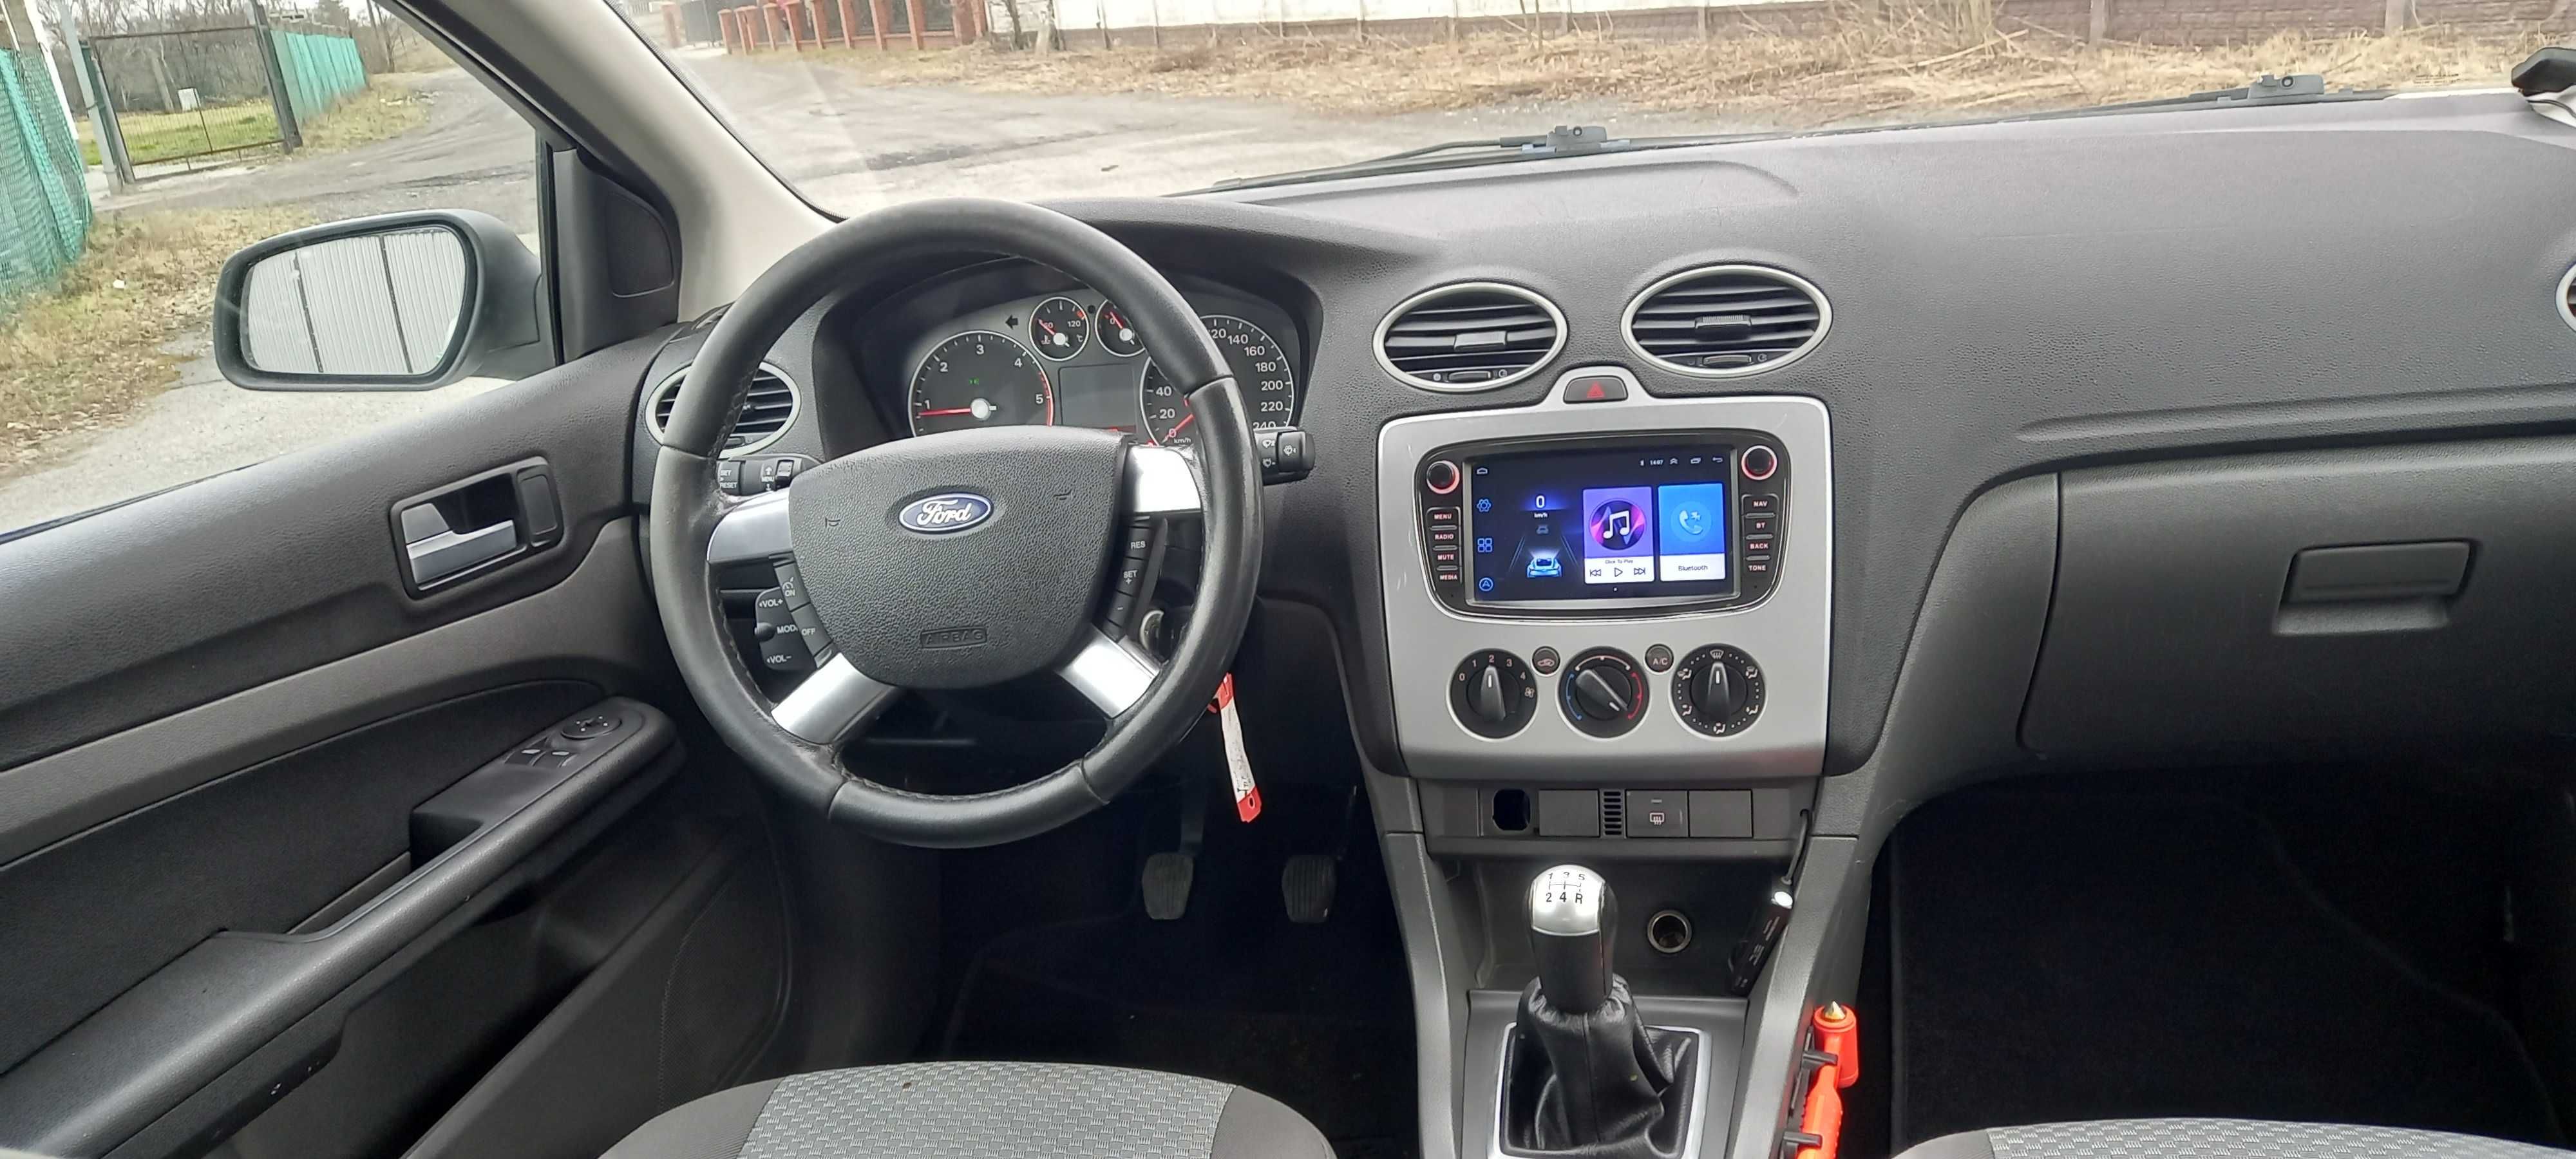 Ford Focus Kombi VAN 1.6 TDCi z NL po opłatach zarejestrowany